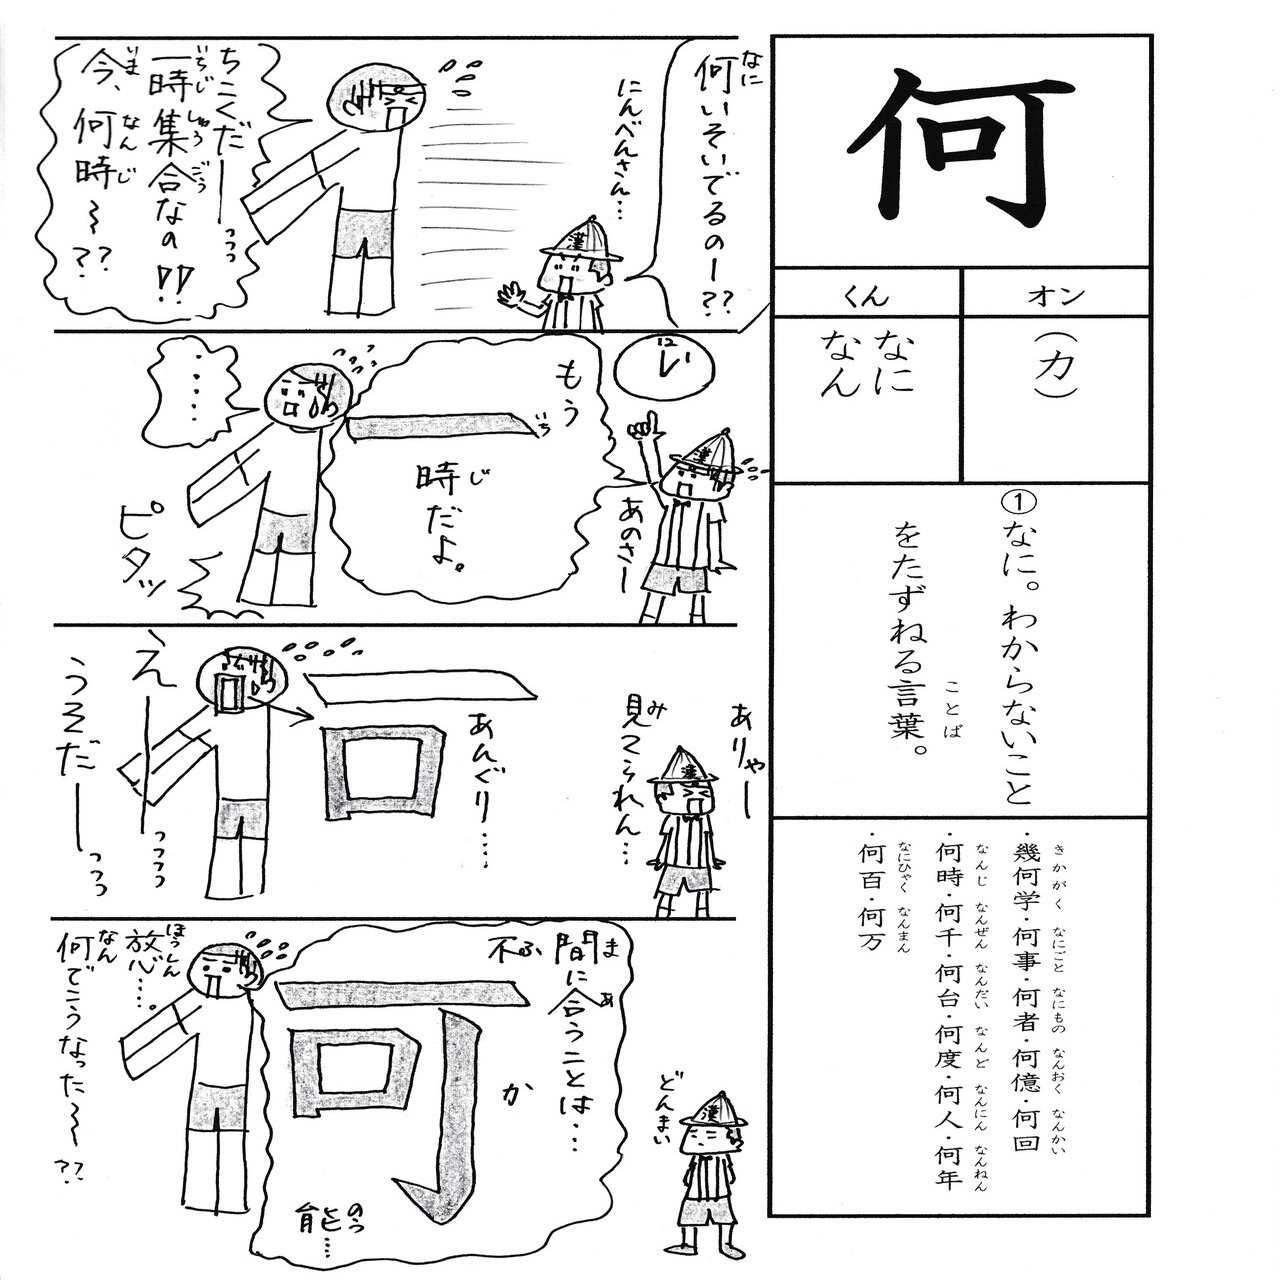 勉強法 小２の漢字 何 を覚える なるほど四コマ漫画 Sun Sunny D01 Note